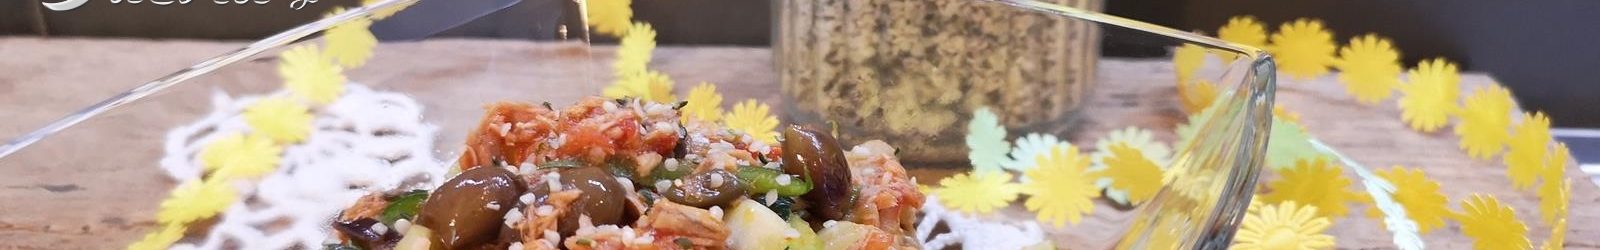 Tagliatelle di zucchine al tonno e olive taggiasche la ricetta